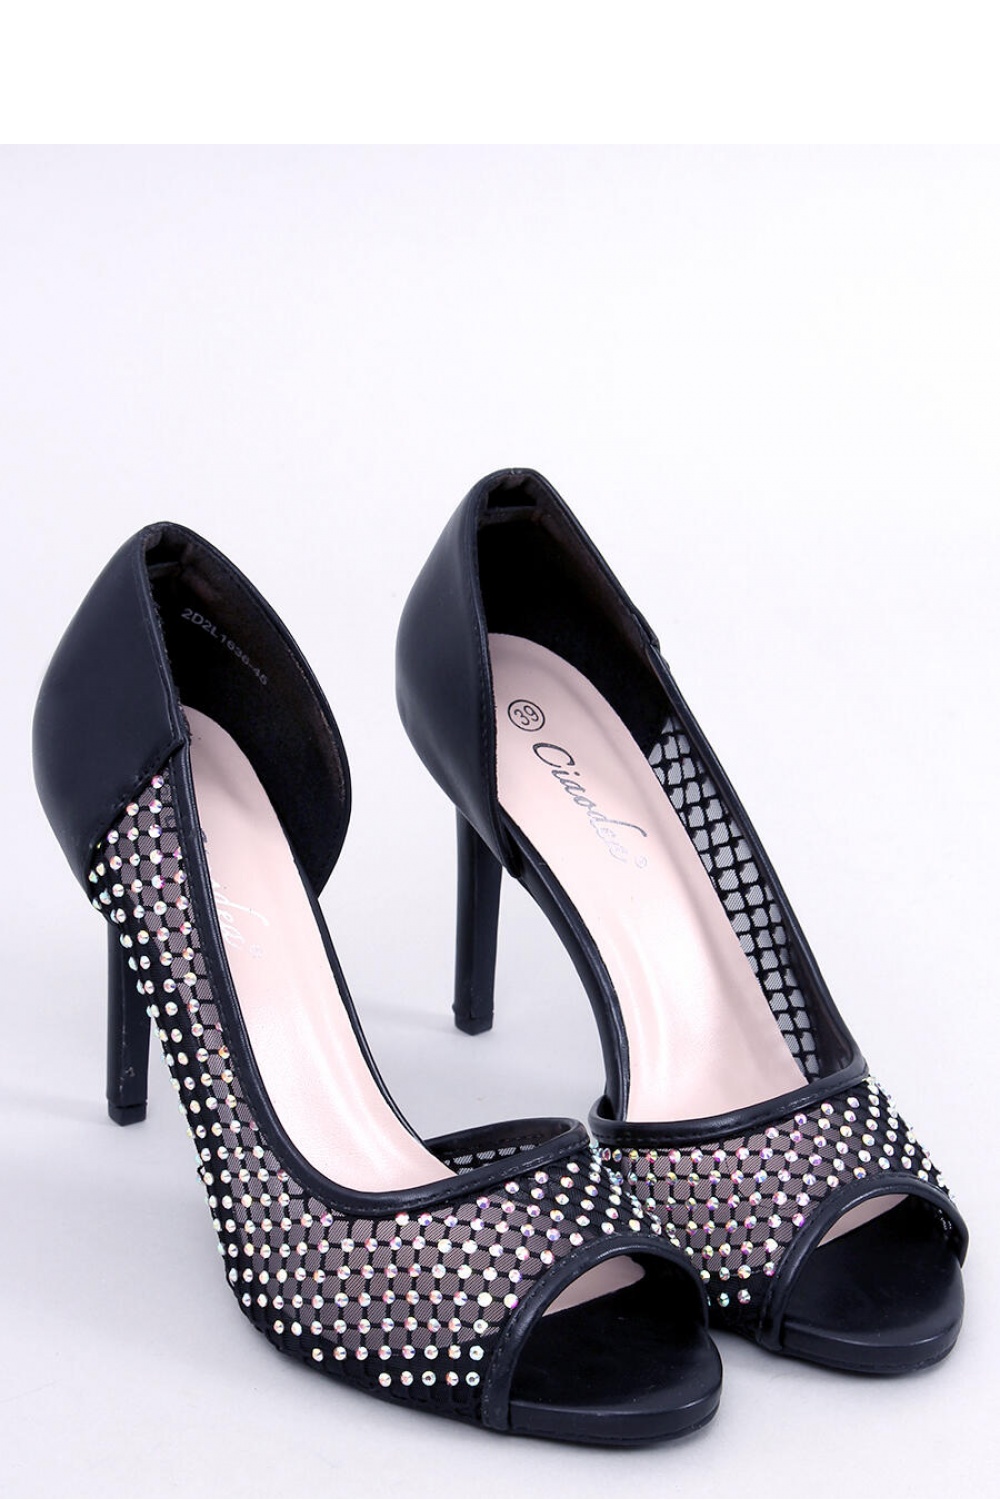 High heels model 176414 Inello